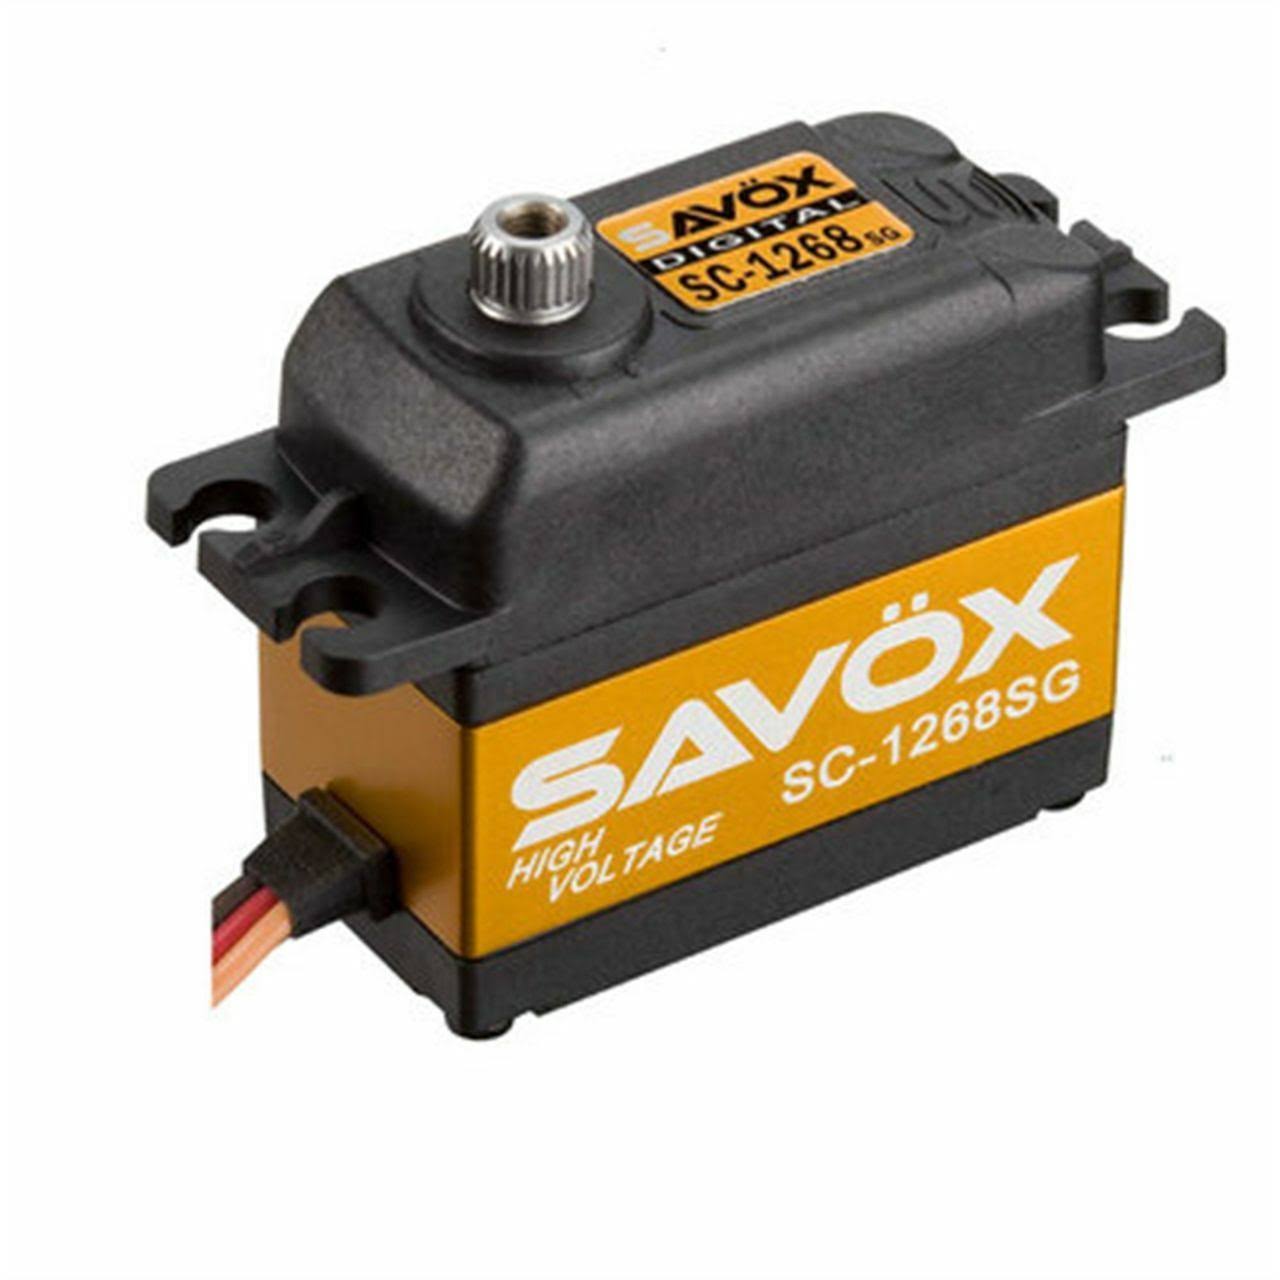 Savox SC-1268SG High Torque Steel Gear Digital Servo